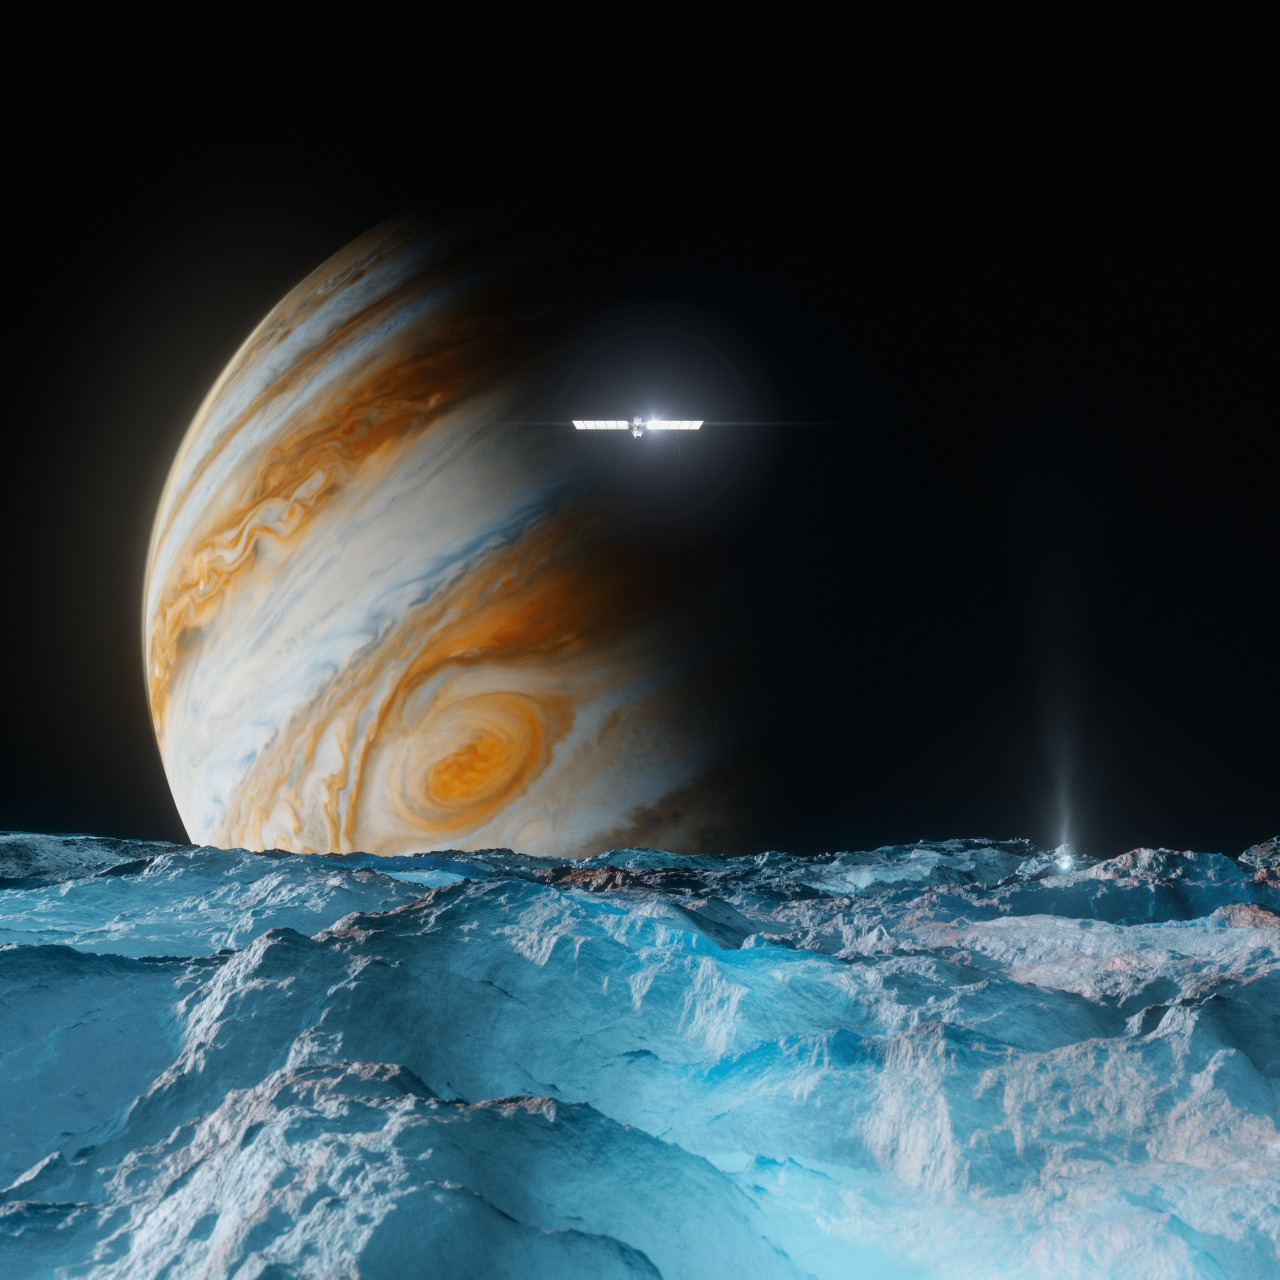 Jüpiter gezegeninin, uydusu Europa'nın ufku üzerinde yükselişini gösteren bir illüstrasyon. Europa'nın yüzeyi mavi, yarı saydam buzdan oluşan kaba bir manzaradan oluşuyor. Jüpiter'in atmosferinde rengarenk turuncu, mavi ve krem ​​renkli şeritleri ve dönen fırtınaları görülebiliyor. Orta mesafede, güneş paneli kanatları güneş ışığında parıldayan Europa Clipper uzay aracı görülebiliyor. Resim kaynak: NASA/JPL-Caltech